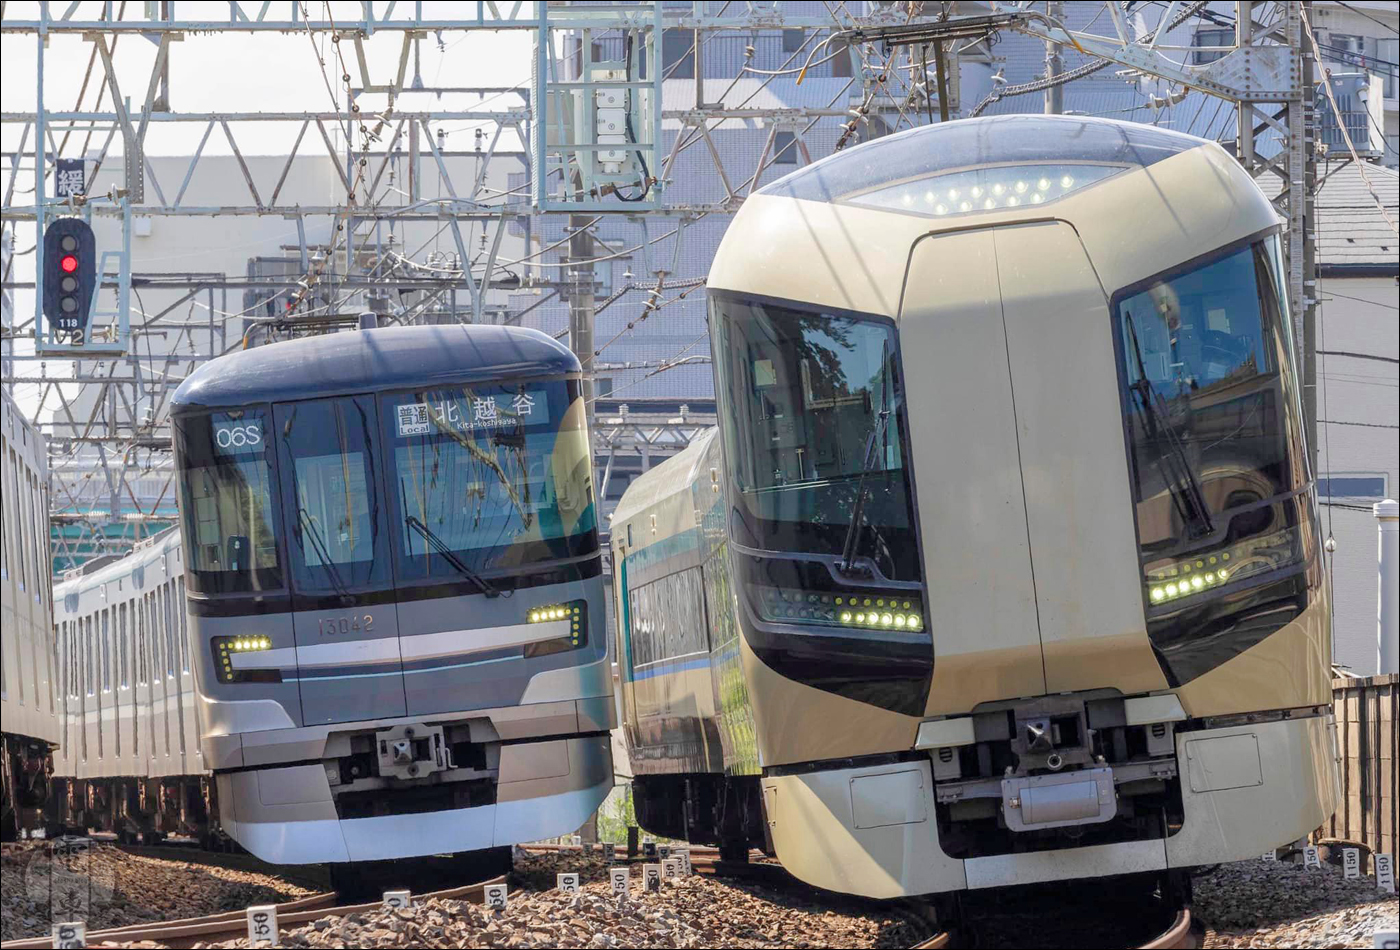 A Tobu Skytree vonalon a fenntartó Tobu mellett a Tokyo Metro Hibiya és Hanzomon vonaláról származó járművek is felbukkannak, itt például a Tokyo Metro egyik 13000-es sorozatú motorvonata pózol a Tobu 500-as sorozattal. Az átjárhatóságnak hála a Tokyo Metro vonalairól átszállás nélkül utazhatunk akár egészen Minami-Kurihashi állomásig.